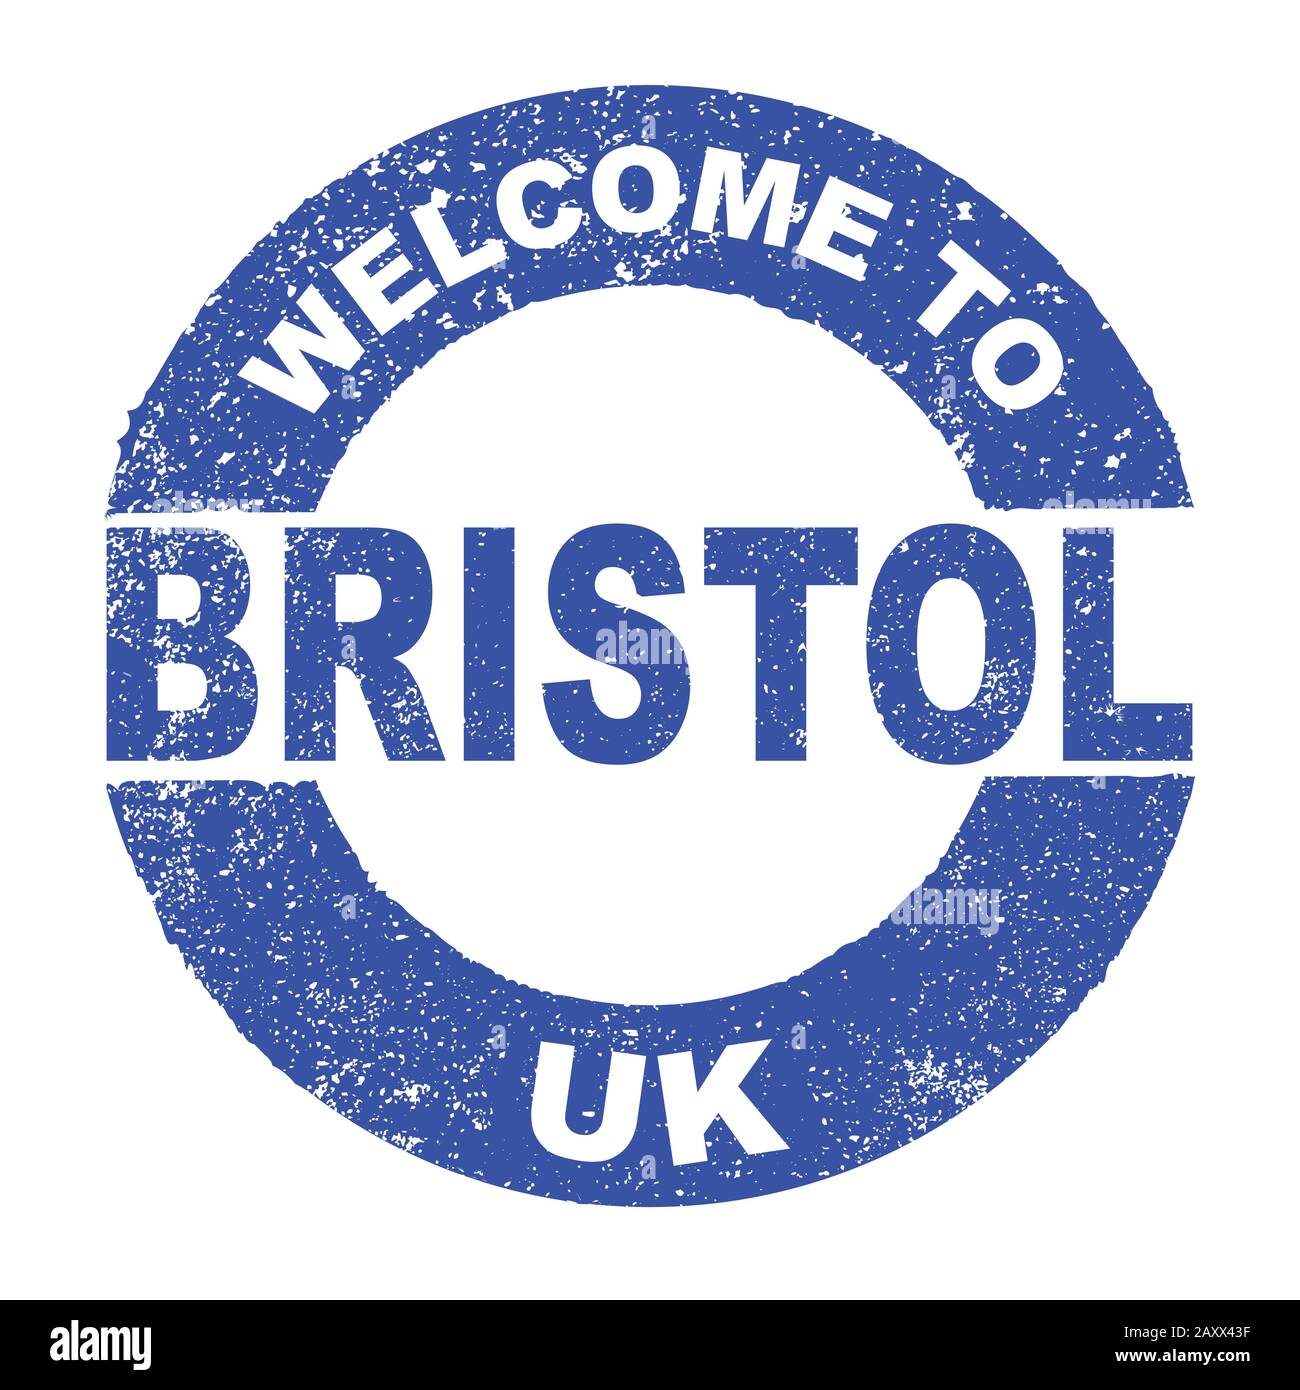 Un tampon d'encre en caoutchouc grunge avec le texte Bienvenue À Bristol UK sur un fond blanc Illustration de Vecteur